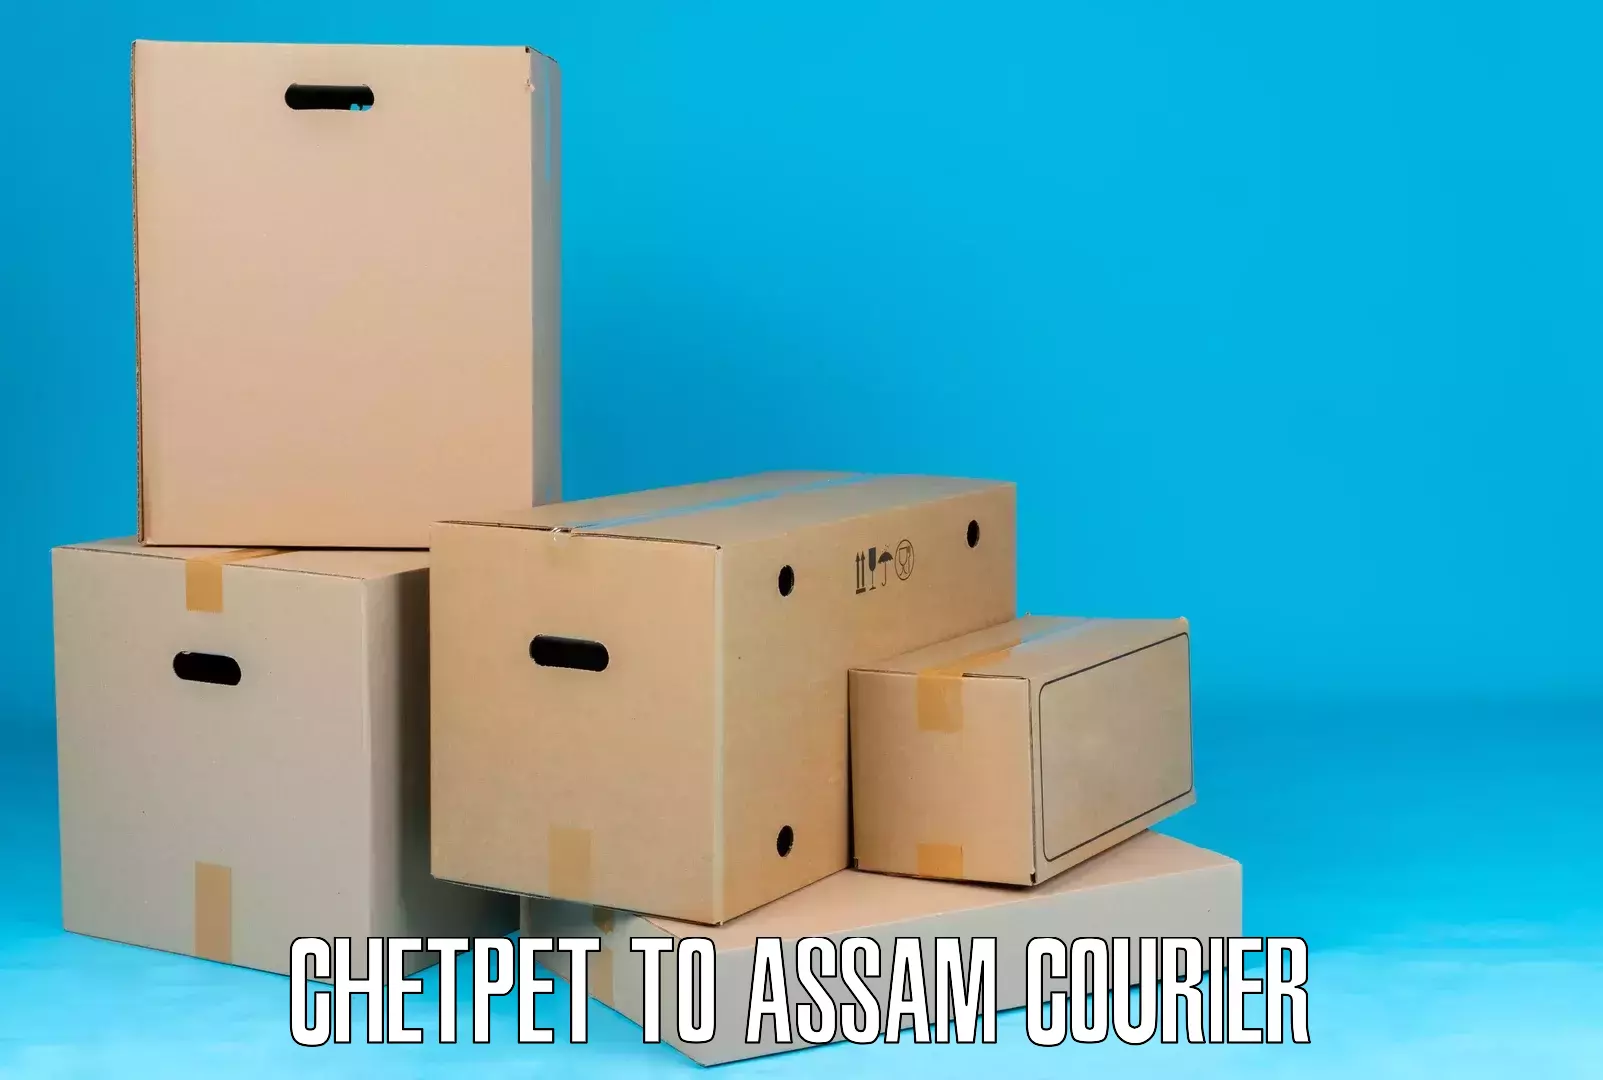 Online shipping calculator Chetpet to Assam